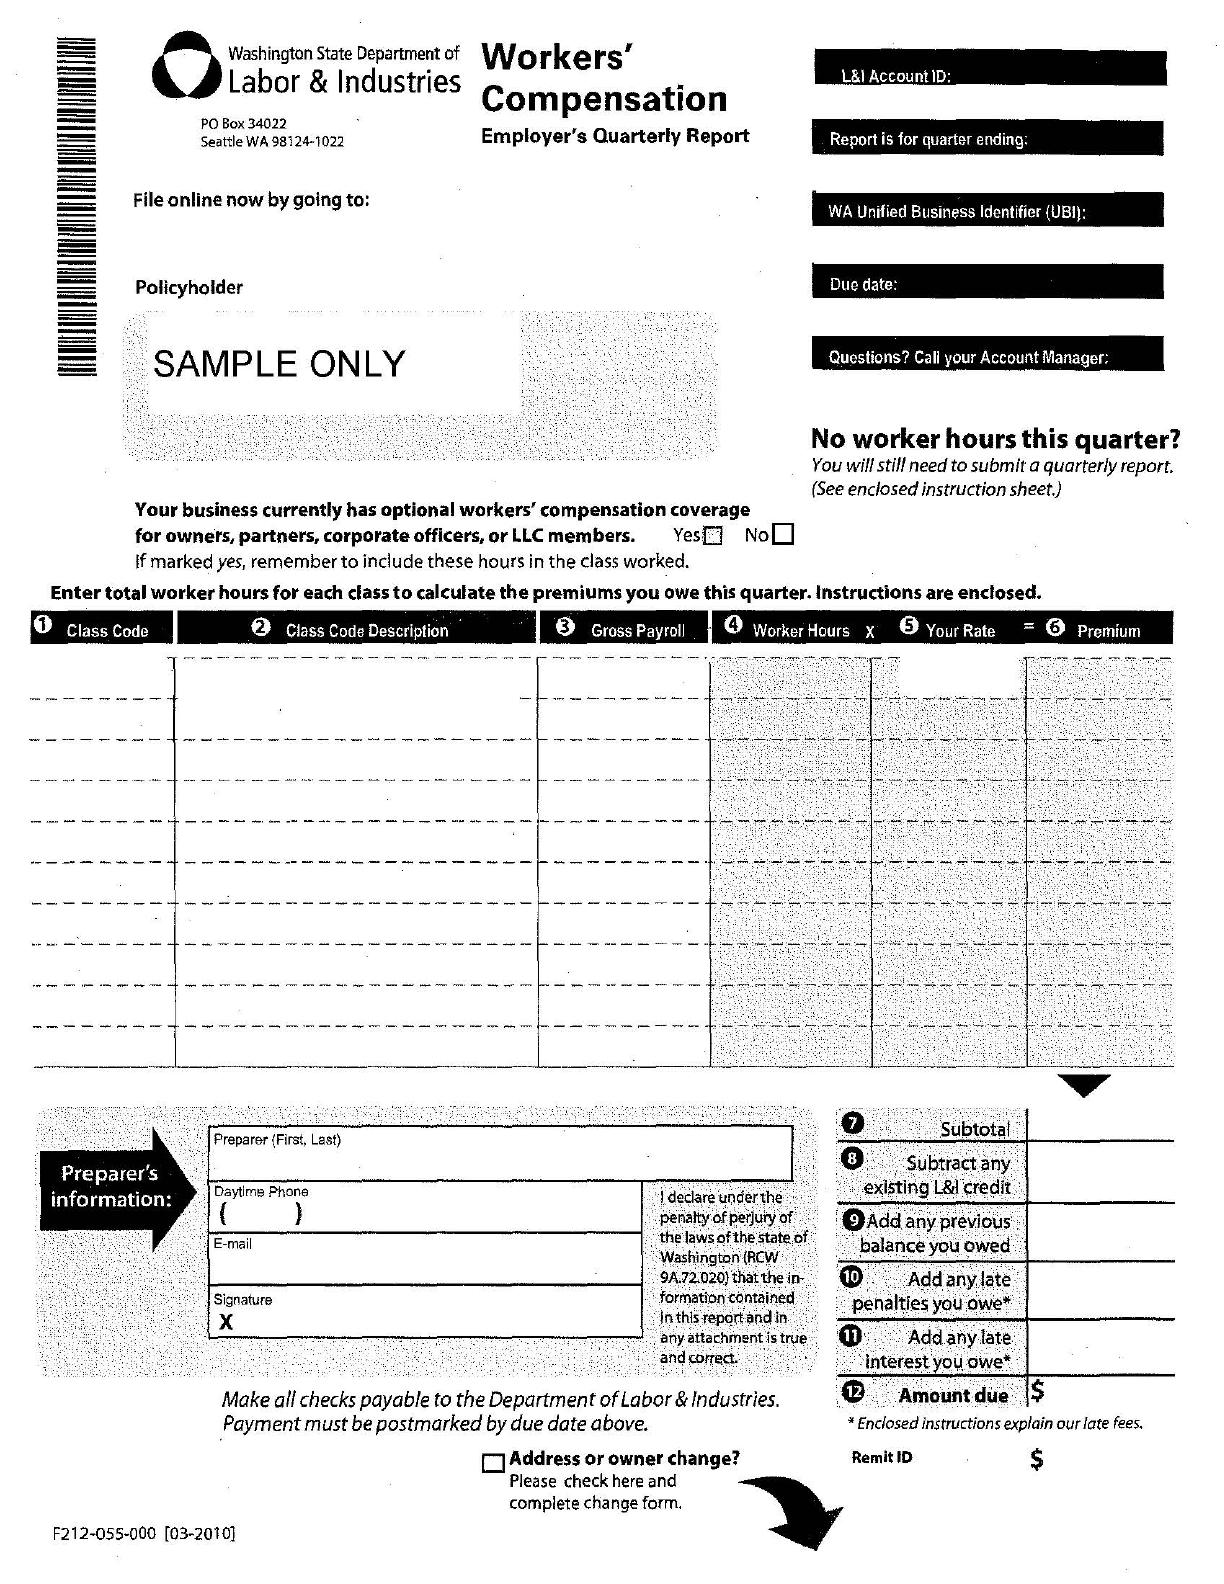 form-212-055-000-edit-fill-sign-online-handypdf